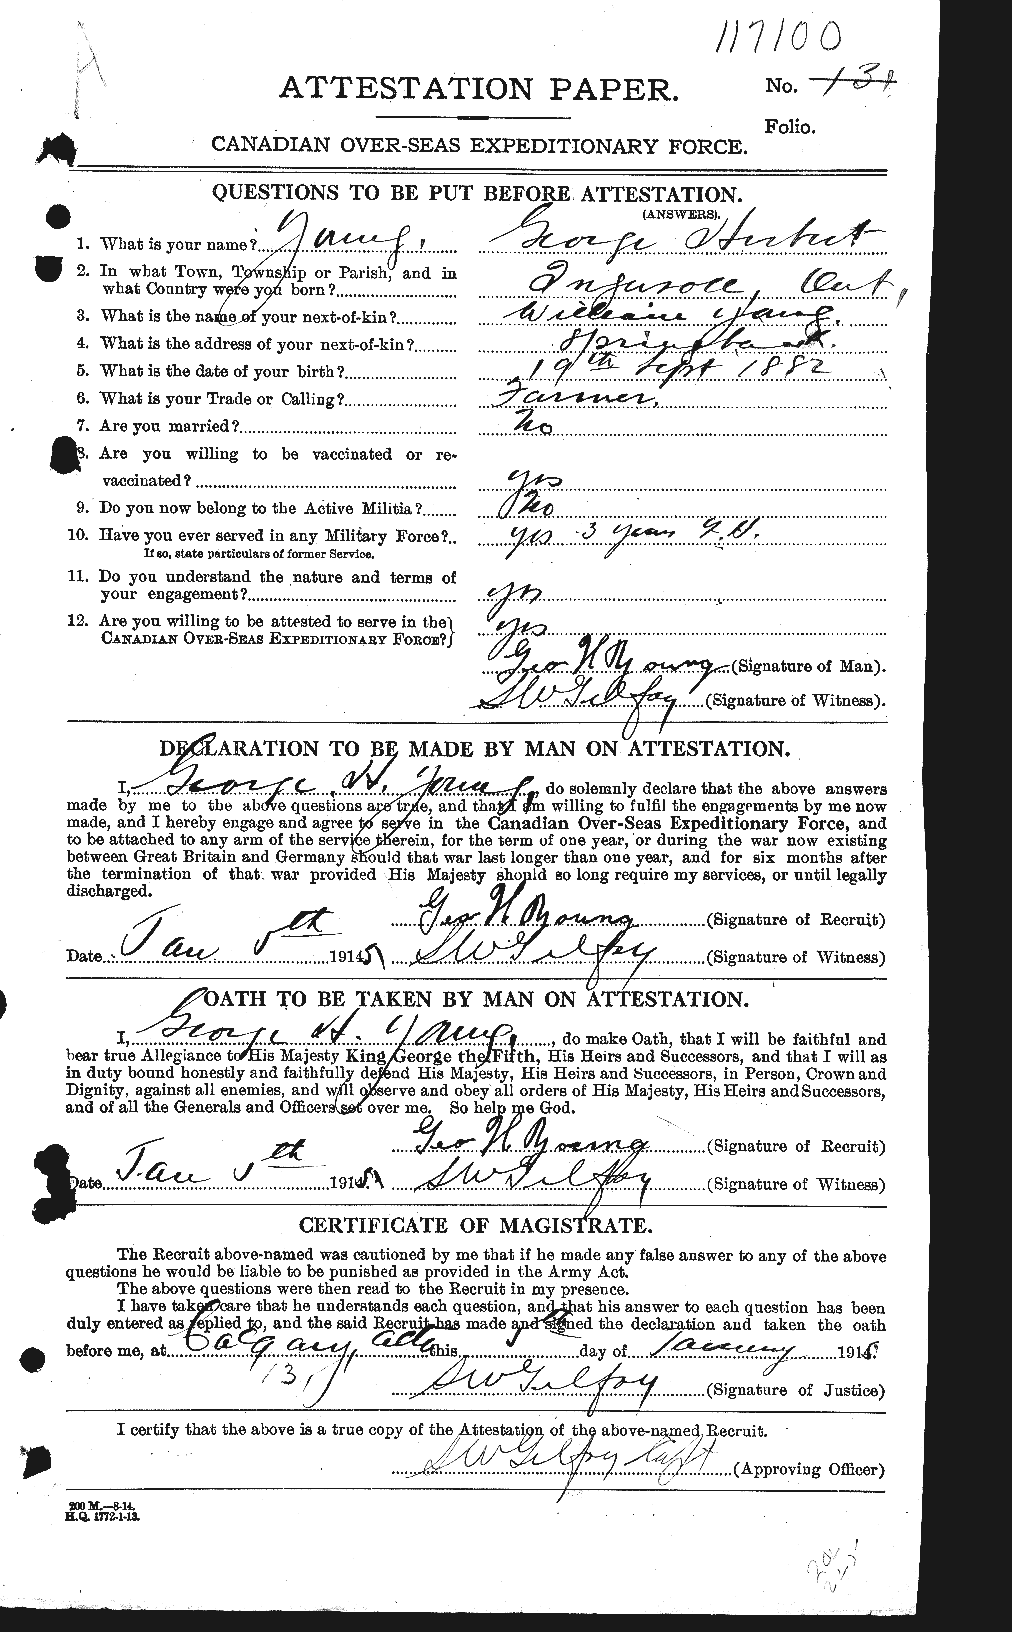 Dossiers du Personnel de la Première Guerre mondiale - CEC 688444a